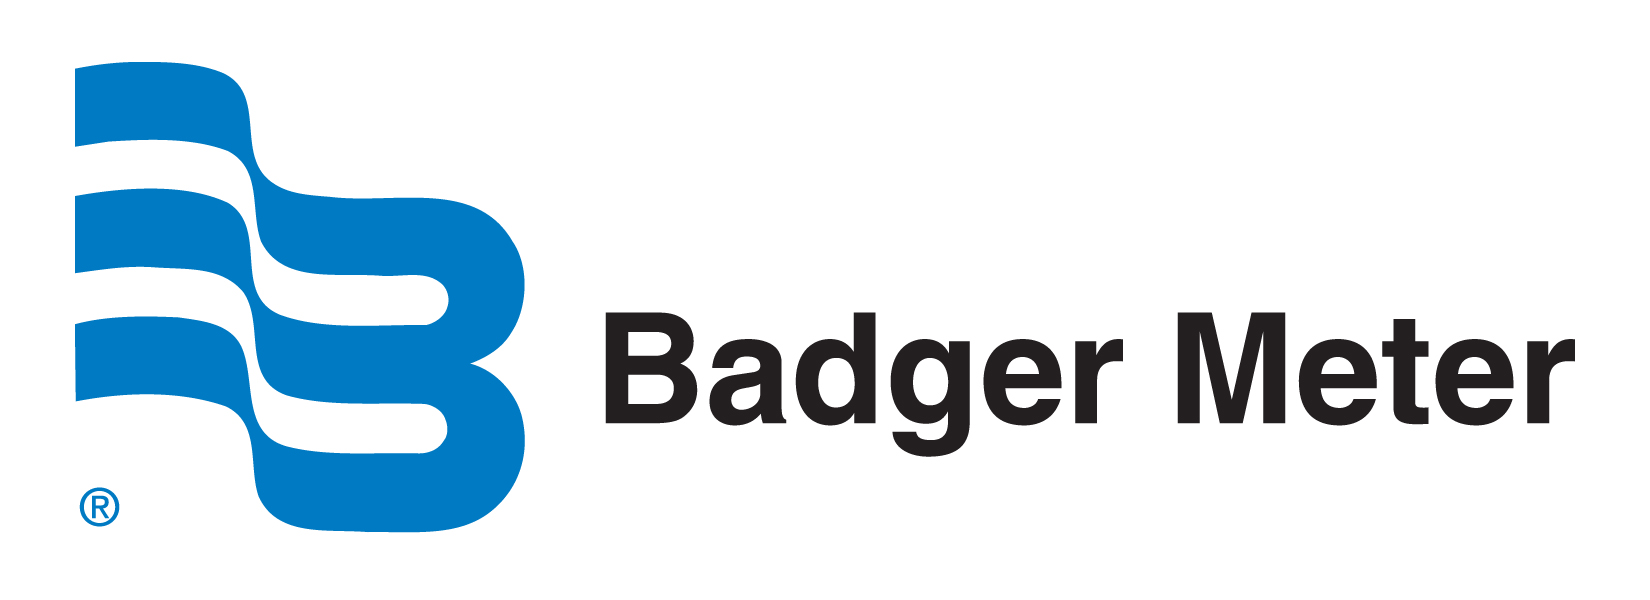 Badger Meter Logo.jpg